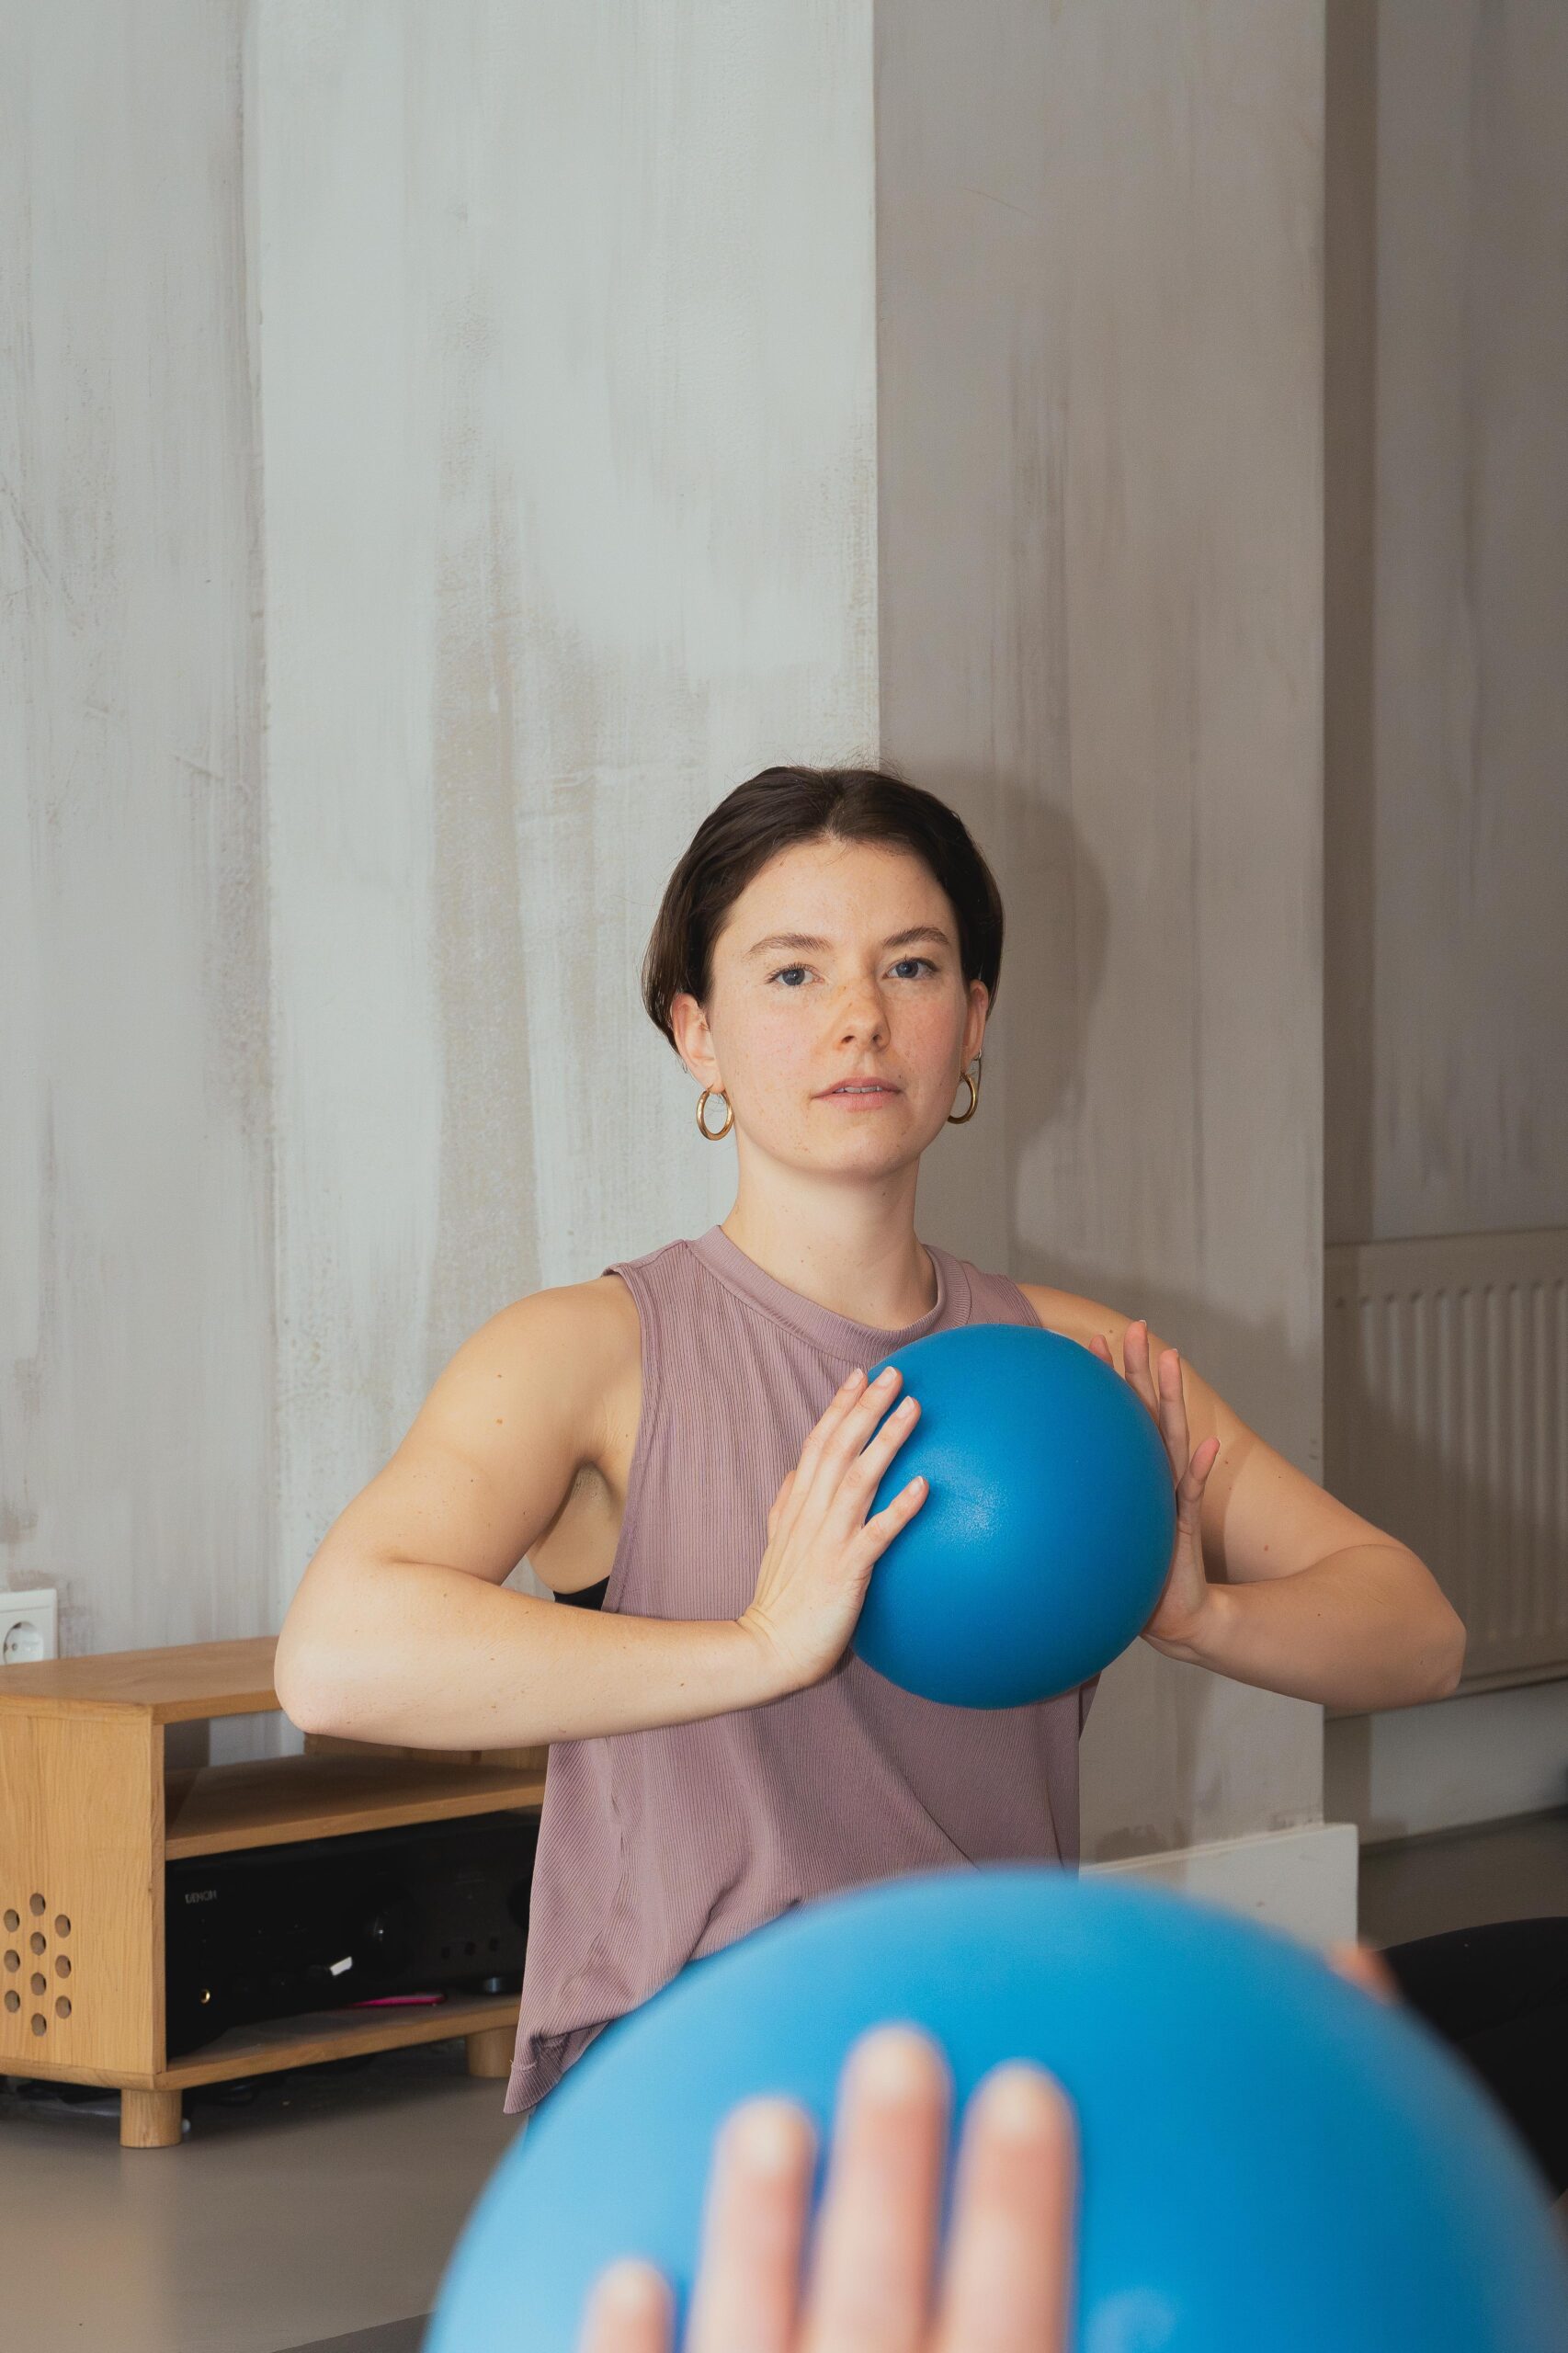 Vrouw traint met een bal bij bbb fysiotherapie.